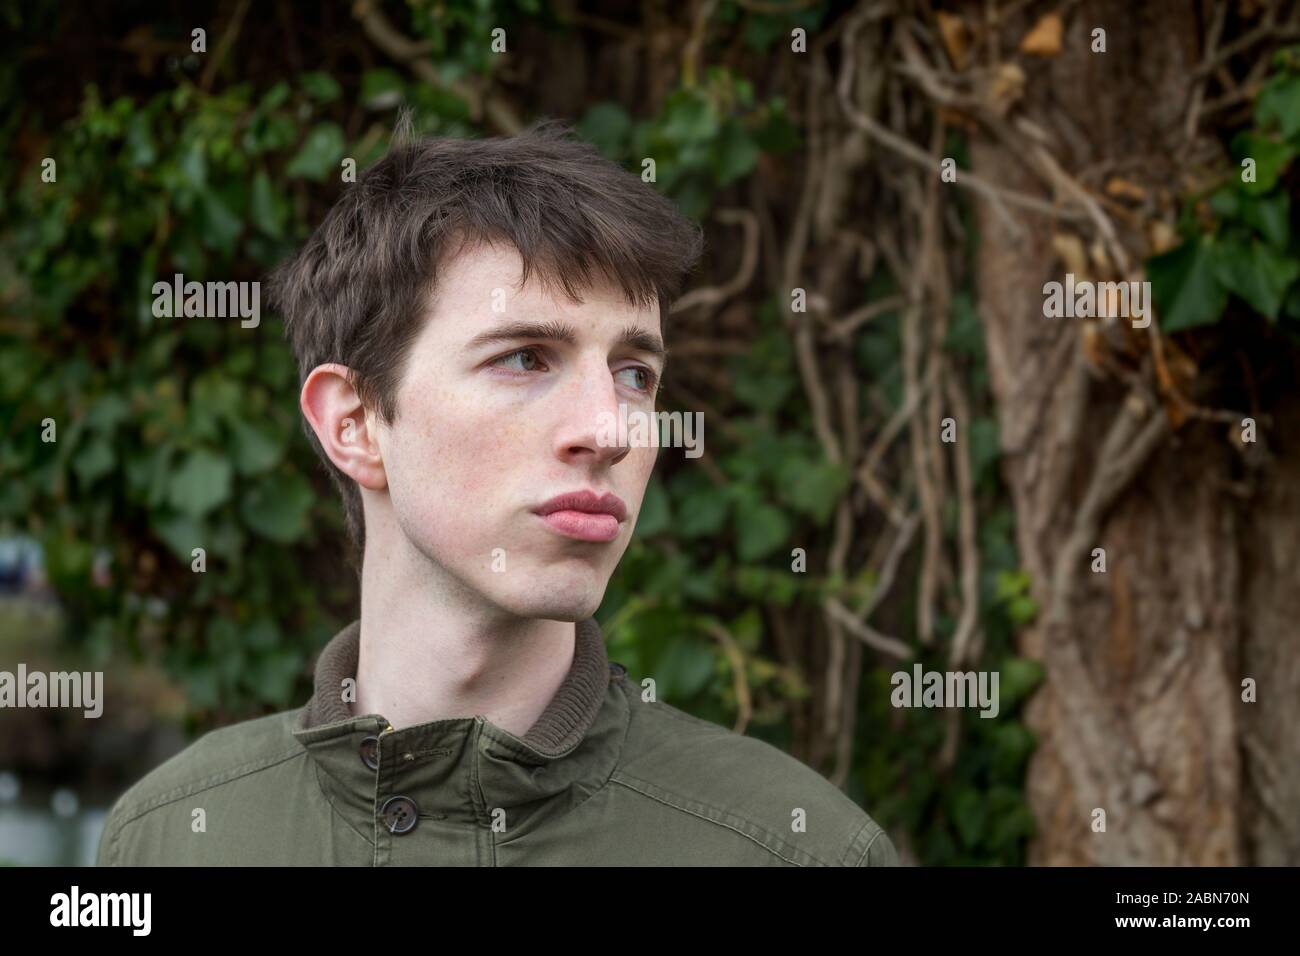 Ein junger Mann, der späten Teens oder 20 etwas steht vor etwas Grün zu seiner Seite nachdenklich. Stockfoto